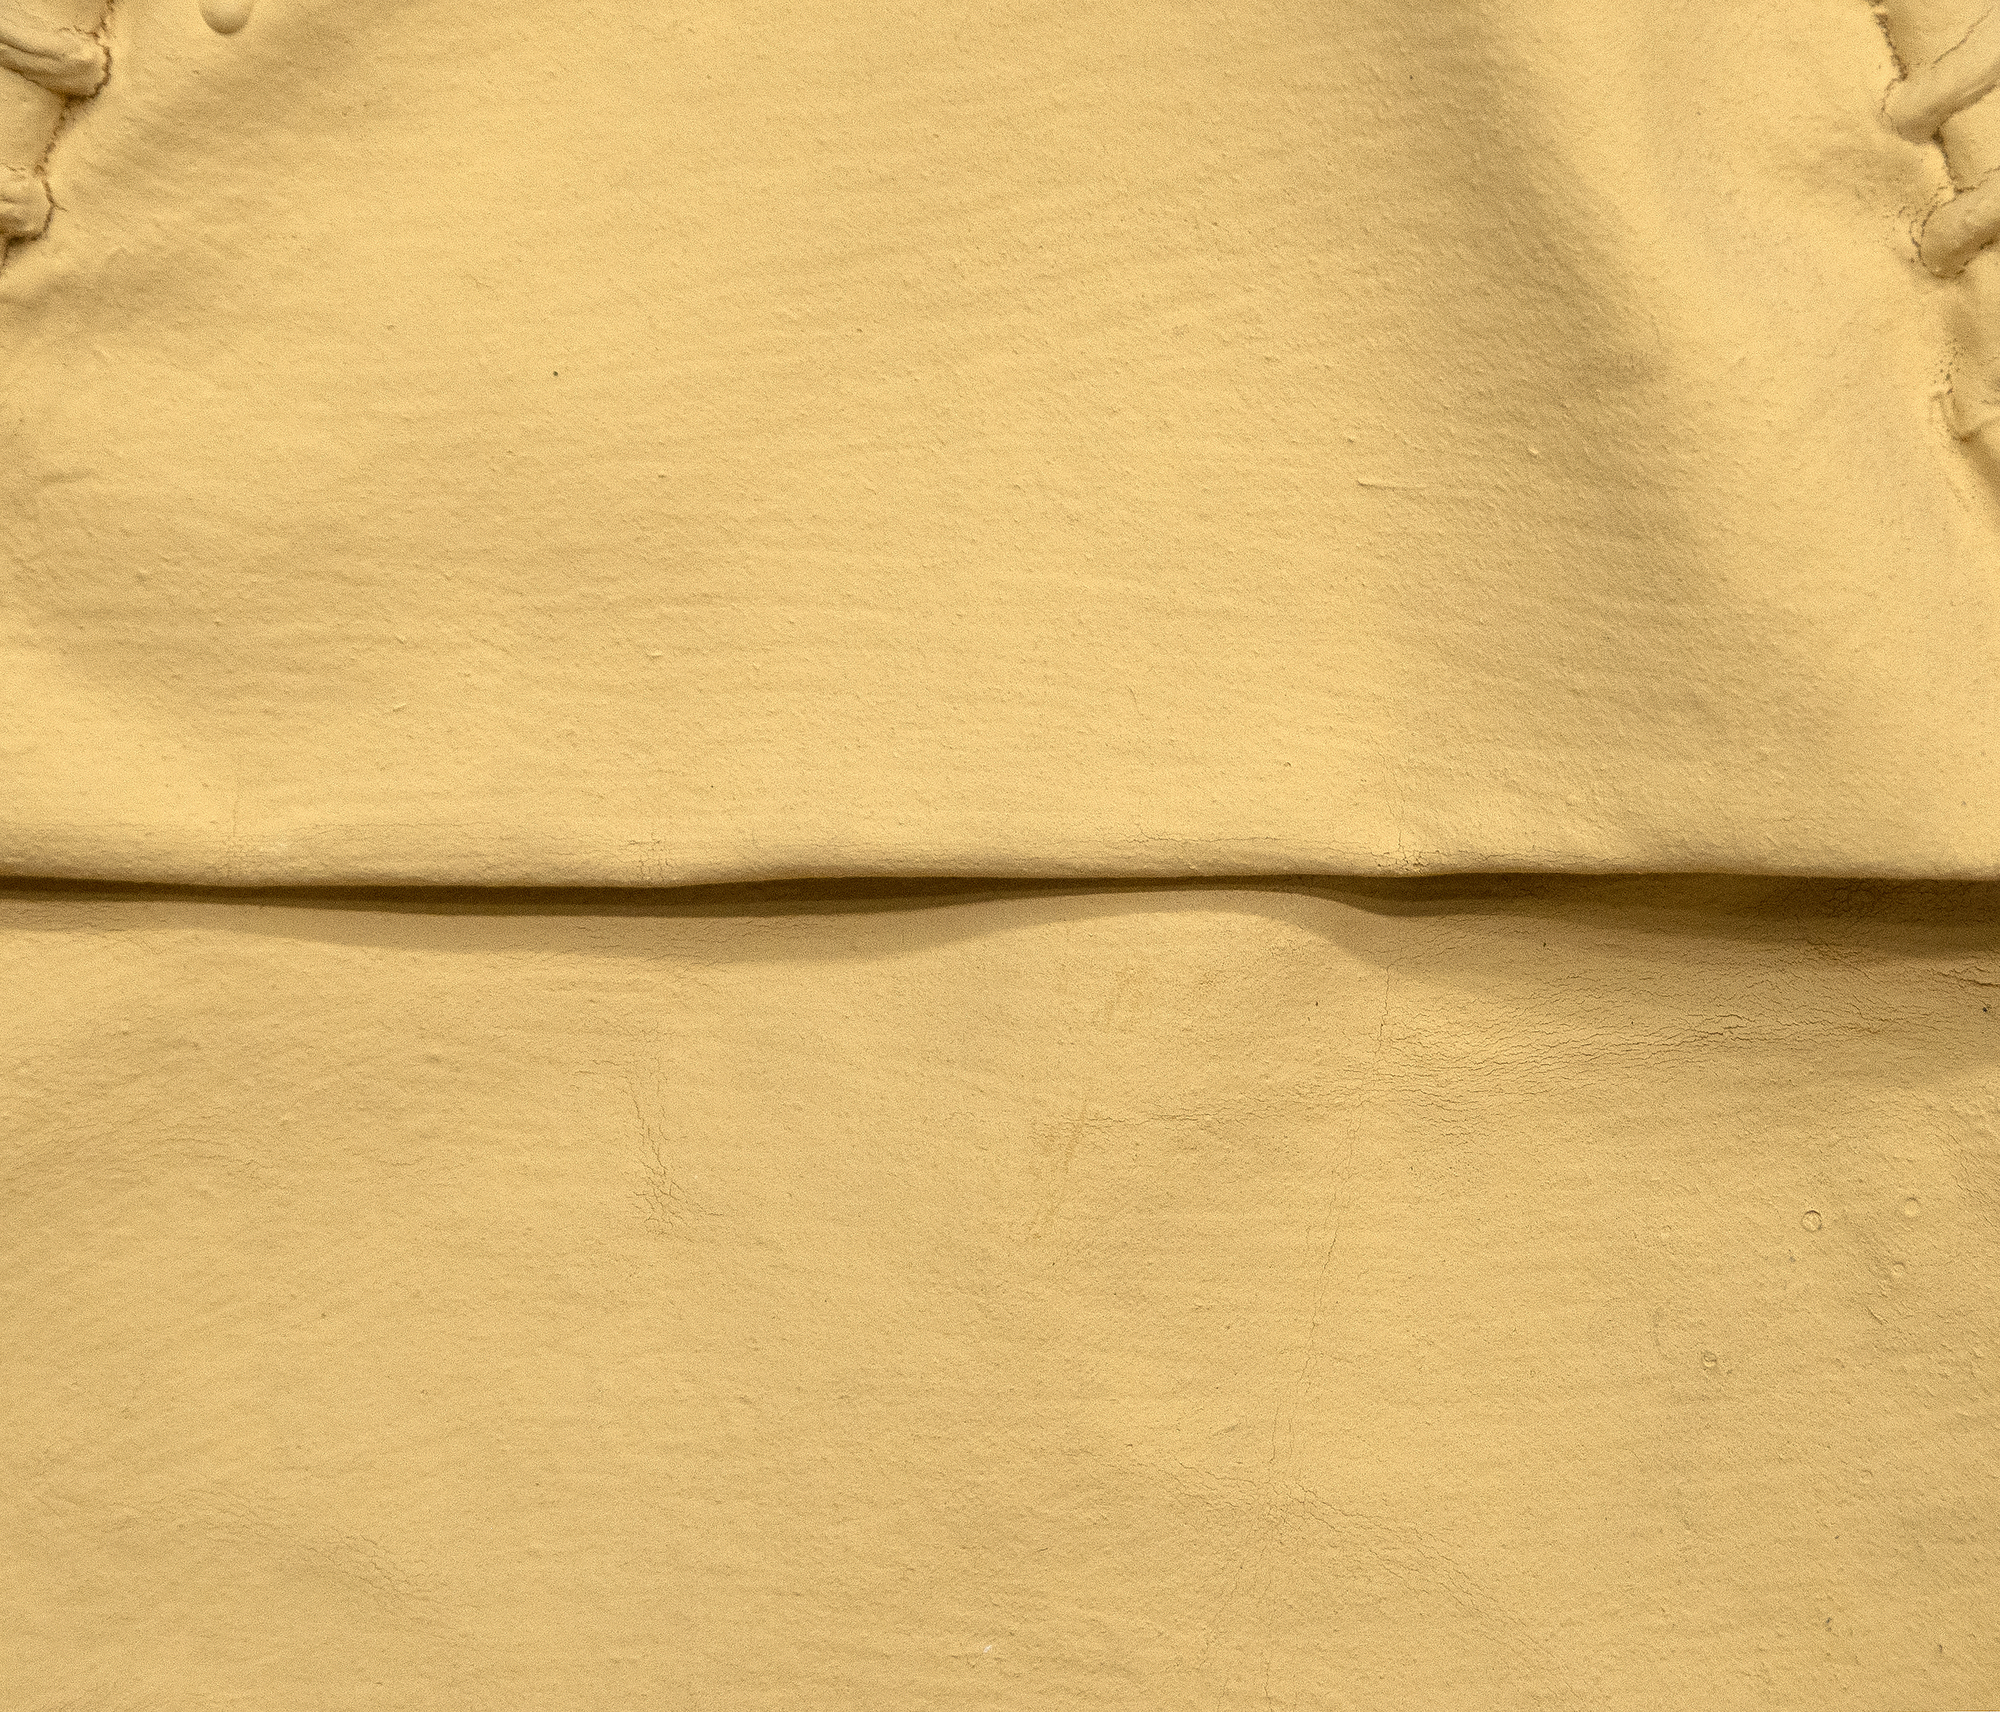 Richard Tuttle ist ein wegweisender amerikanischer postminimalistischer Künstler. Tuttle's Arbeit ist konzeptuell und meditativ, überschreitet die Grenzen von Skulptur, Malerei und Poesie und fordert den Betrachter oft heraus. Ohne Titel (Cloth and Paint Work #2) von 1973, einer entscheidenden Phase in der Karriere des Künstlers, erinnert an den früheren Minimalismus seiner Karriere und drängt auf materialbasierte Konzeptkunst. In seiner Arbeit würdigt er die Readymades von Marcel Duchamp. Textilien spielen, wie in diesem Stück, eine große Rolle in seinem Werk und werden zu Orten, an denen Performance, Engagement und Bedeutung im Mittelpunkt stehen.